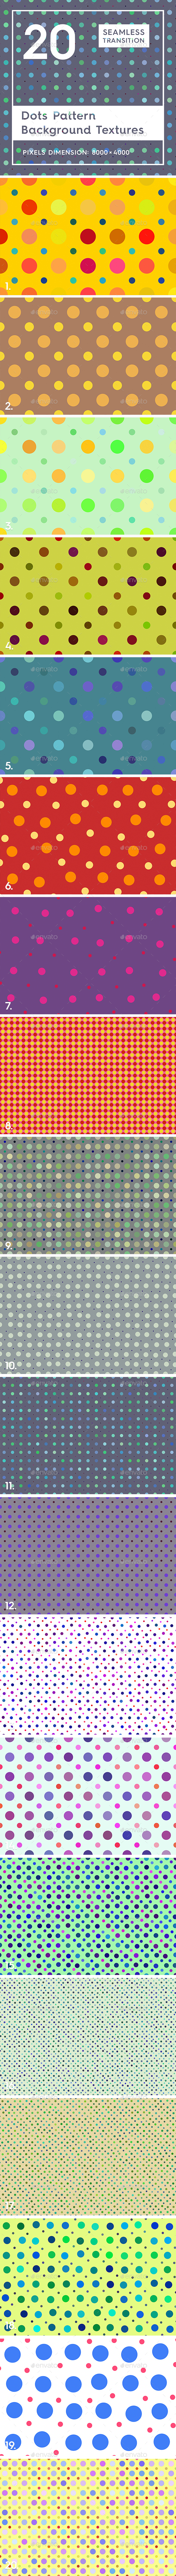 20 Dots Pattern - 3Docean 21879187